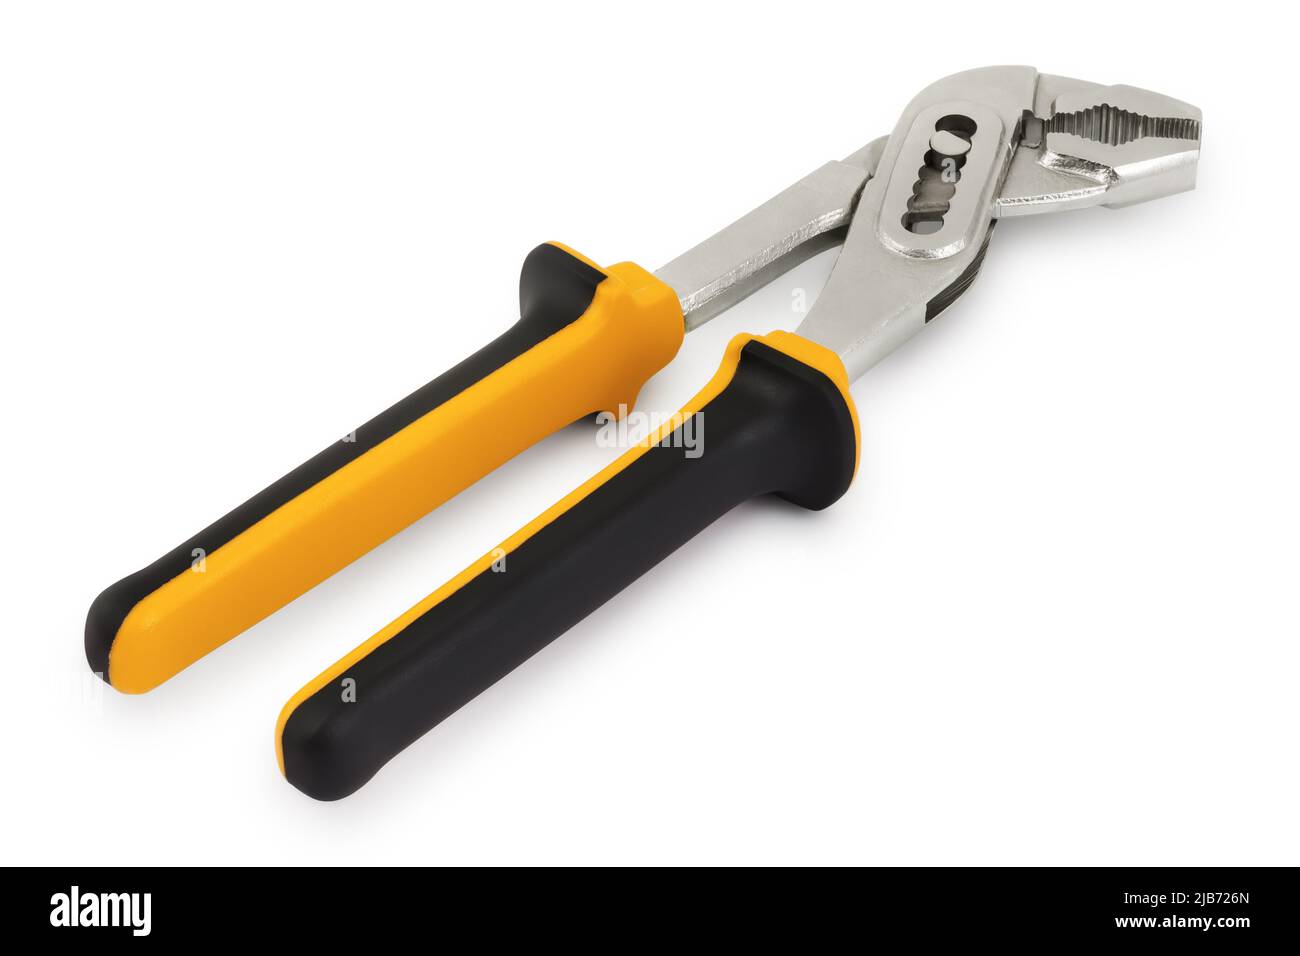 Chiave per idraulico, utensile per costruzioni o lavori industriali, colorata in nero e gialla isolata su sfondo bianco. Foto Stock